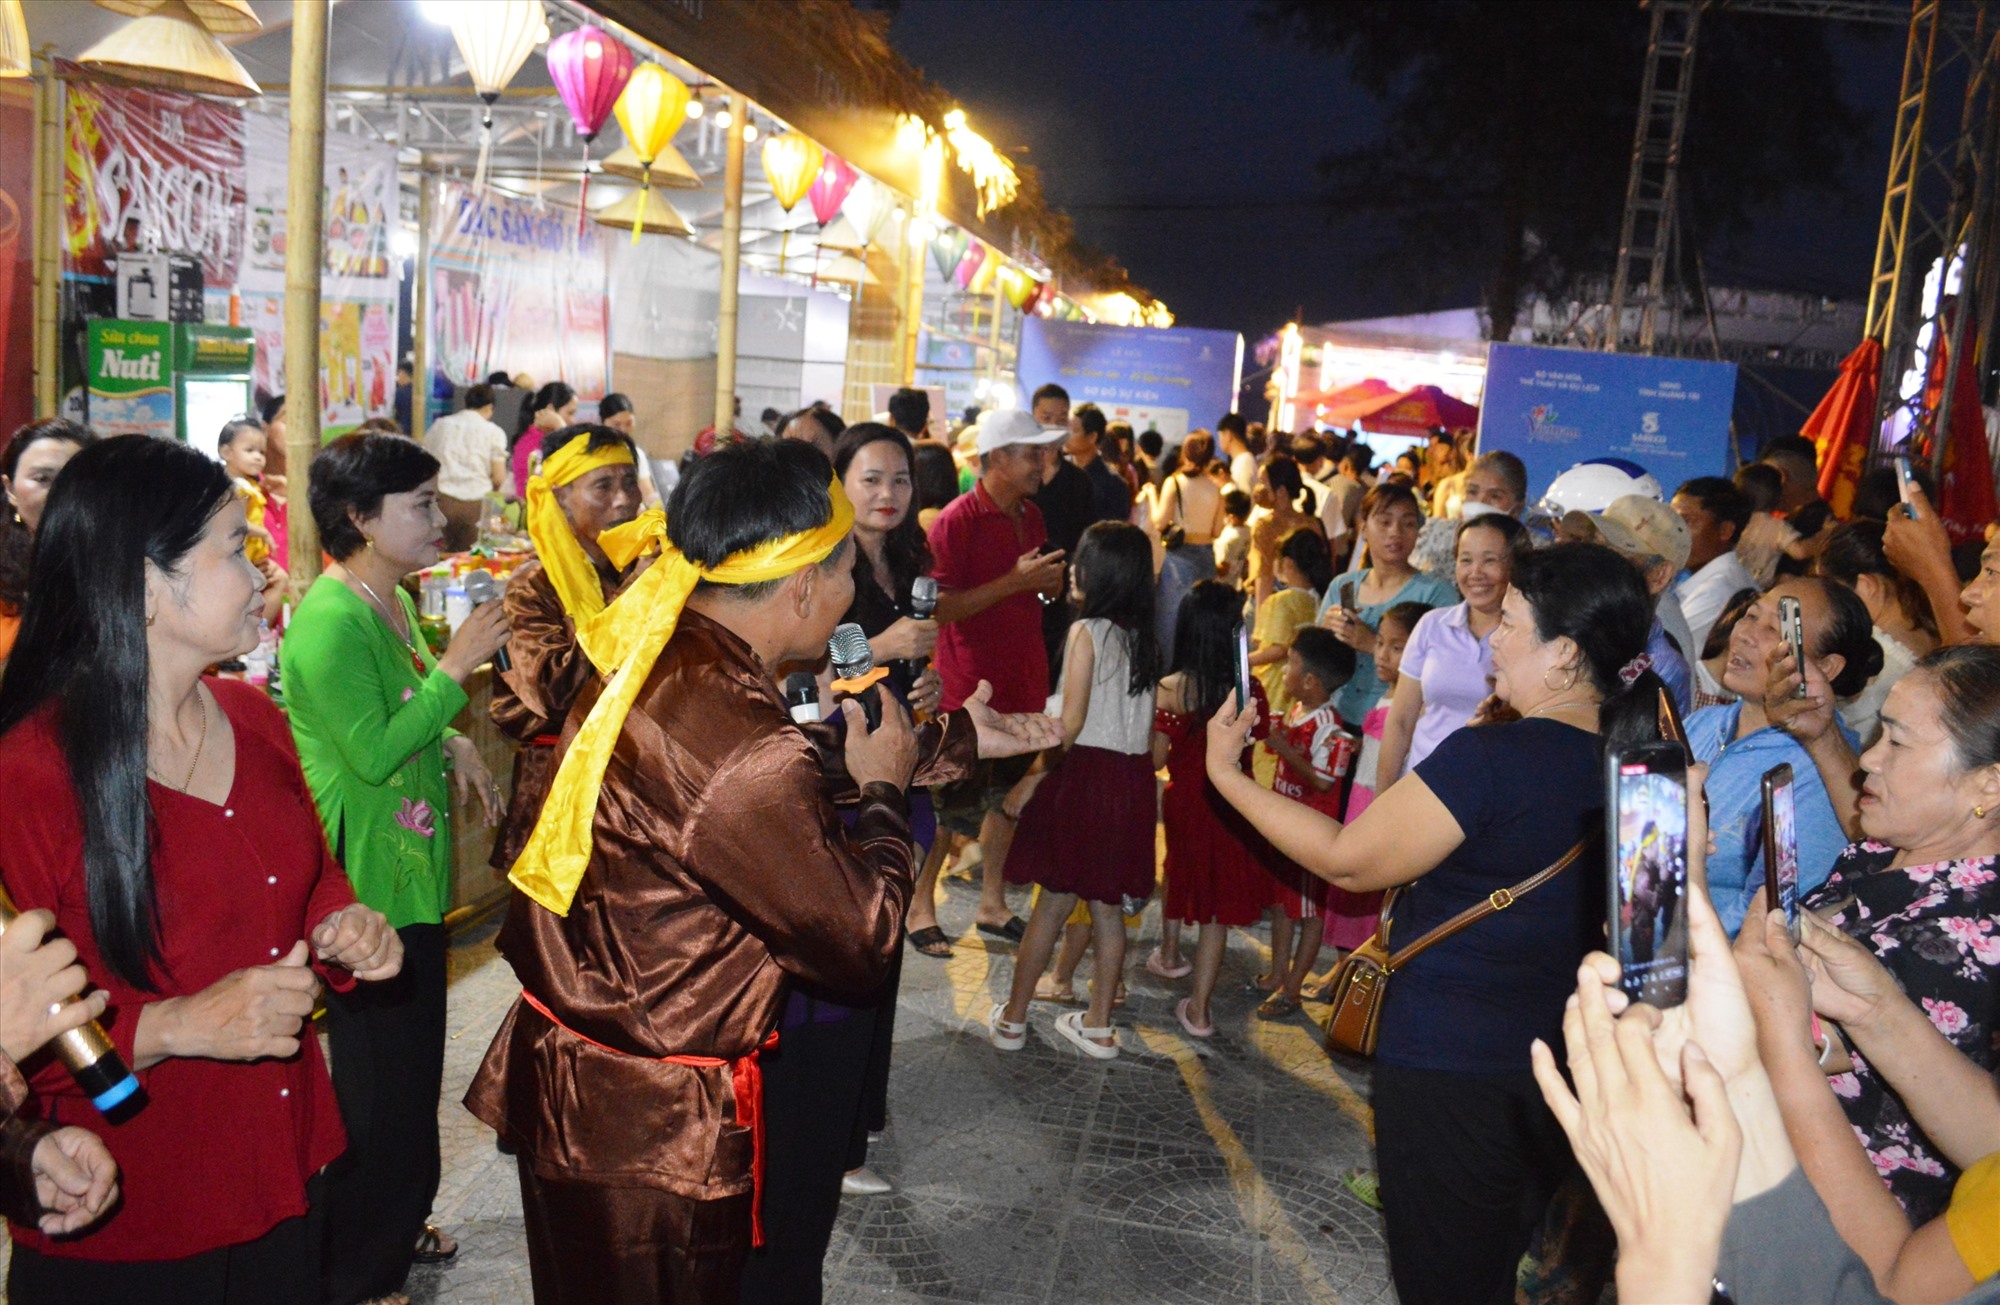 Nghệ thuật trình diễn dân gian Hò giã gạo Quảng Trị cũng được đưa vào lễ hội tạo nên không khí vui tươi, đậm chất nghệ thuật truyền thống quê hương - Ảnh: ĐV